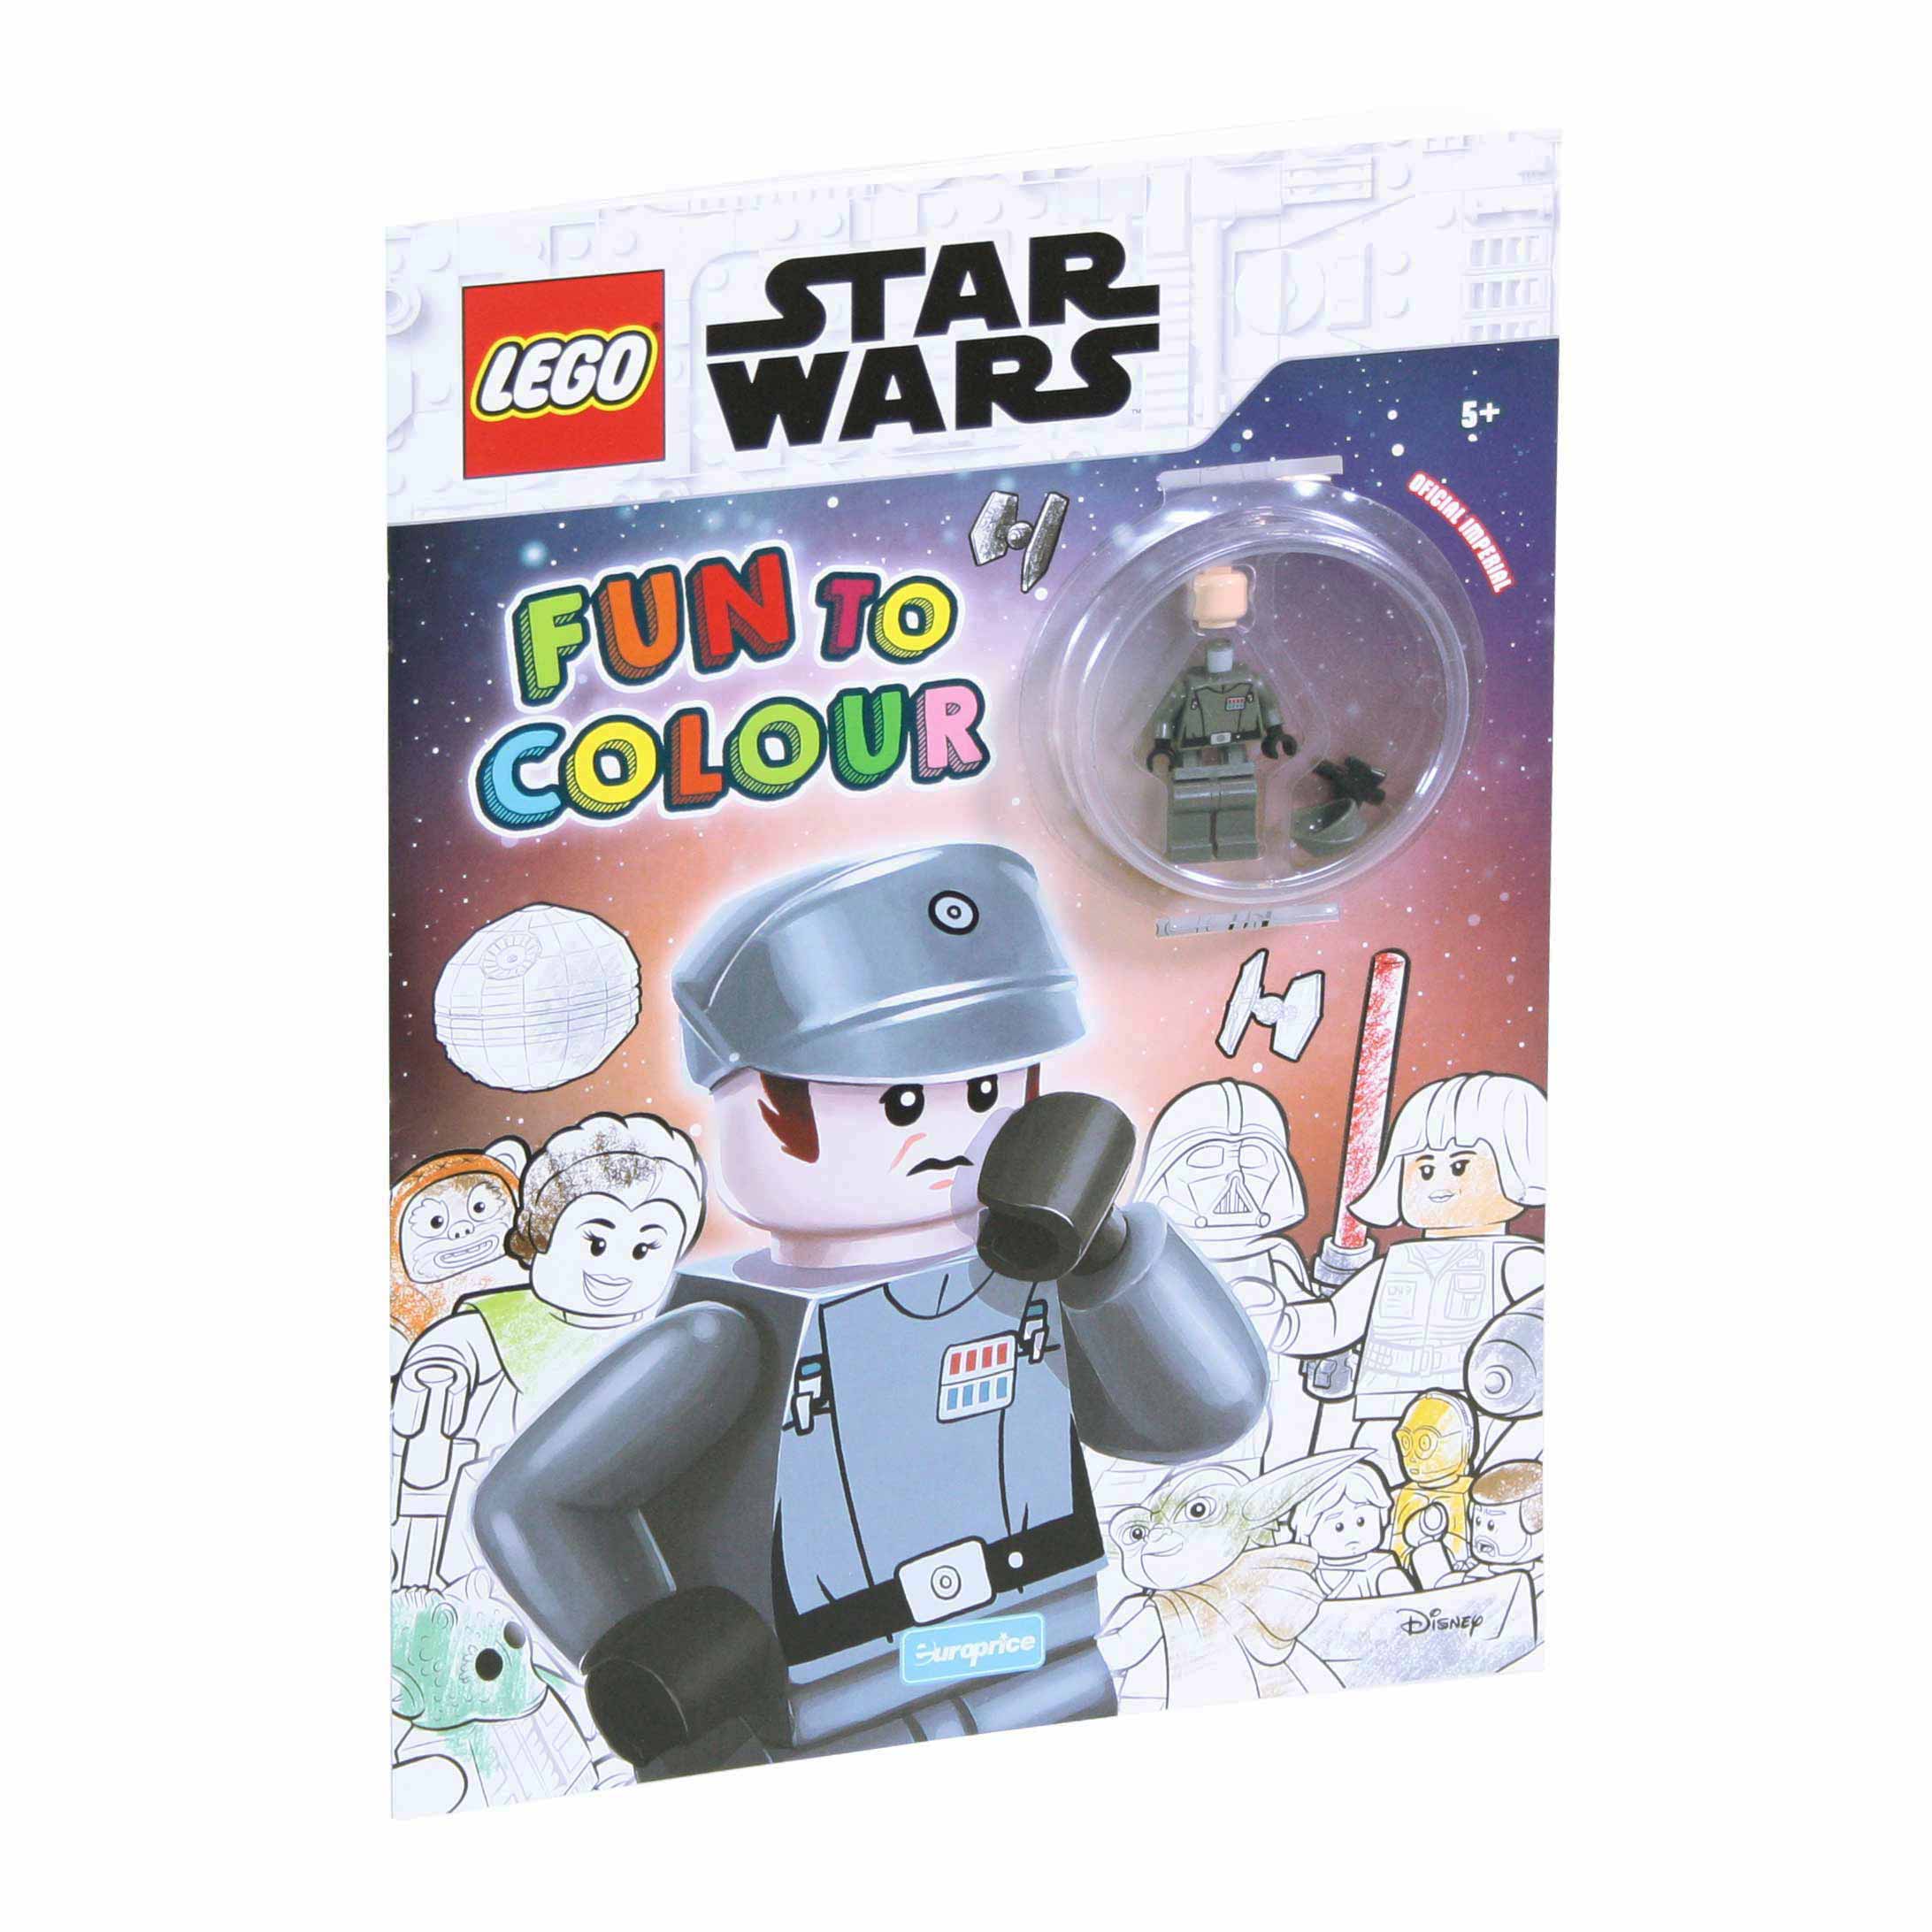 Capa da imagem do livro de pintar Lego Fun to Colour – Star Wars Oficial Imperial com a minifigura